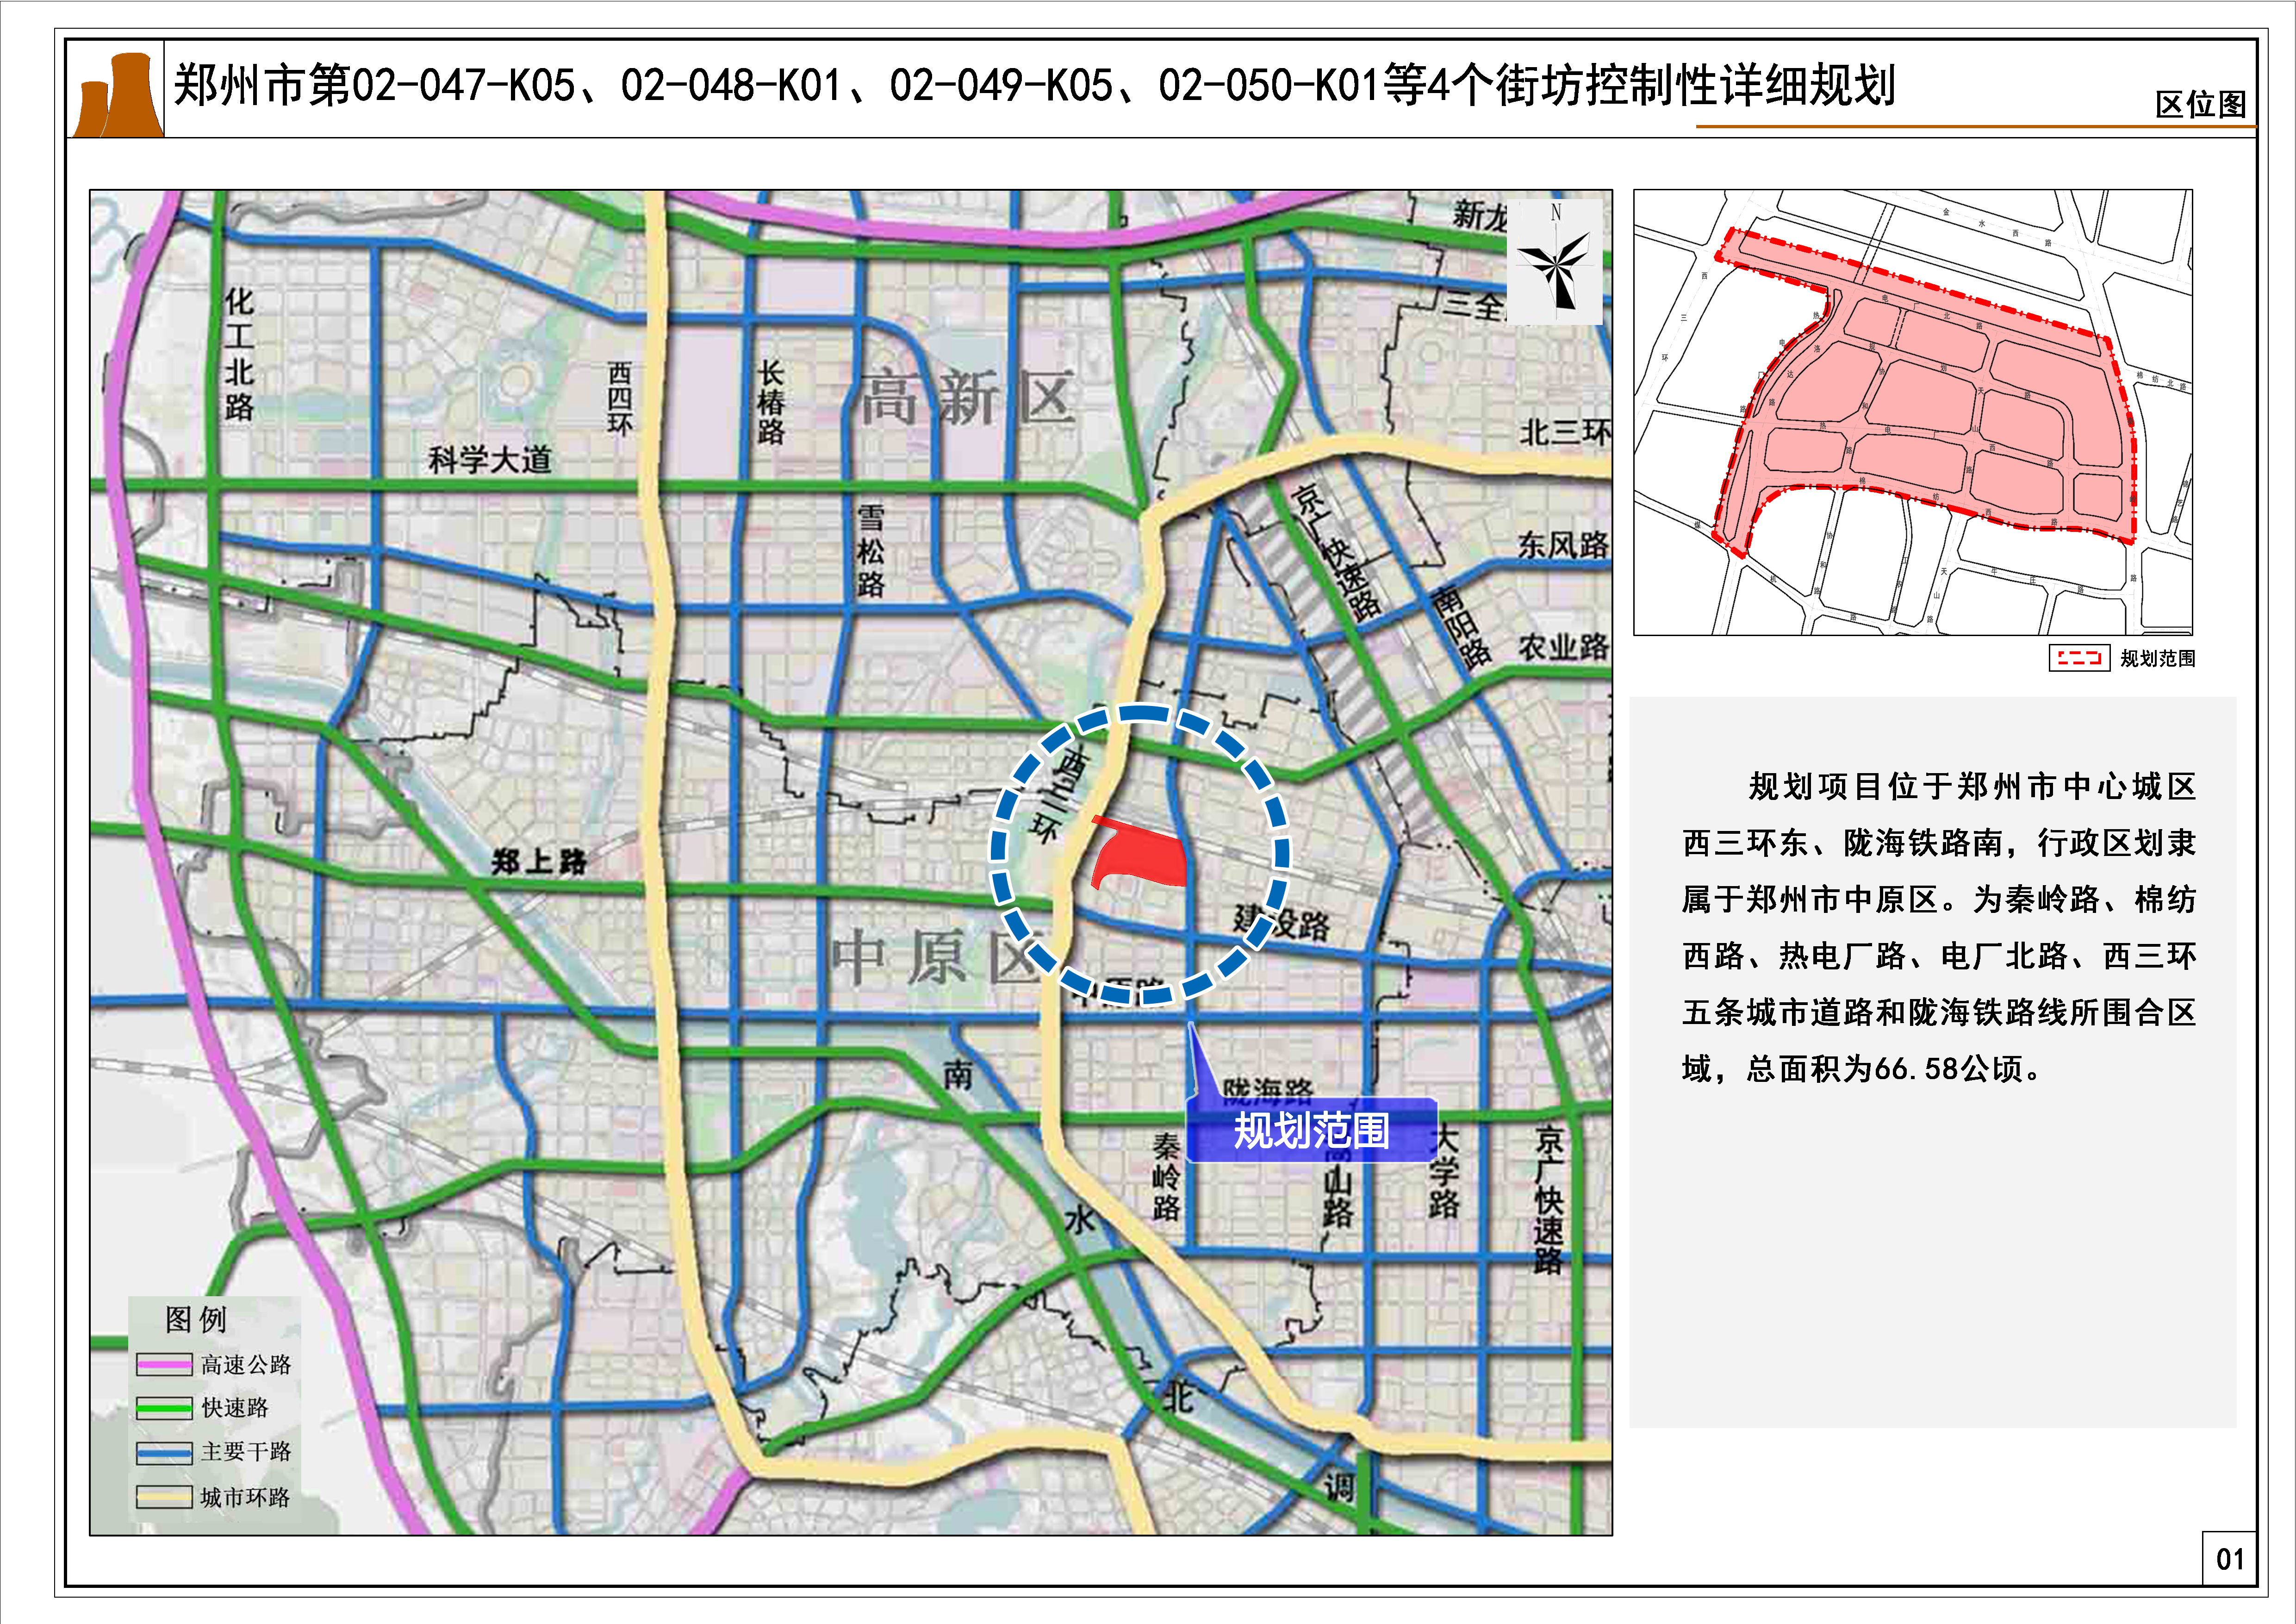 郑州市第02-047-K05、02-048-K01、02-049-K05、02-050-K01等4个街坊控制性详细规划